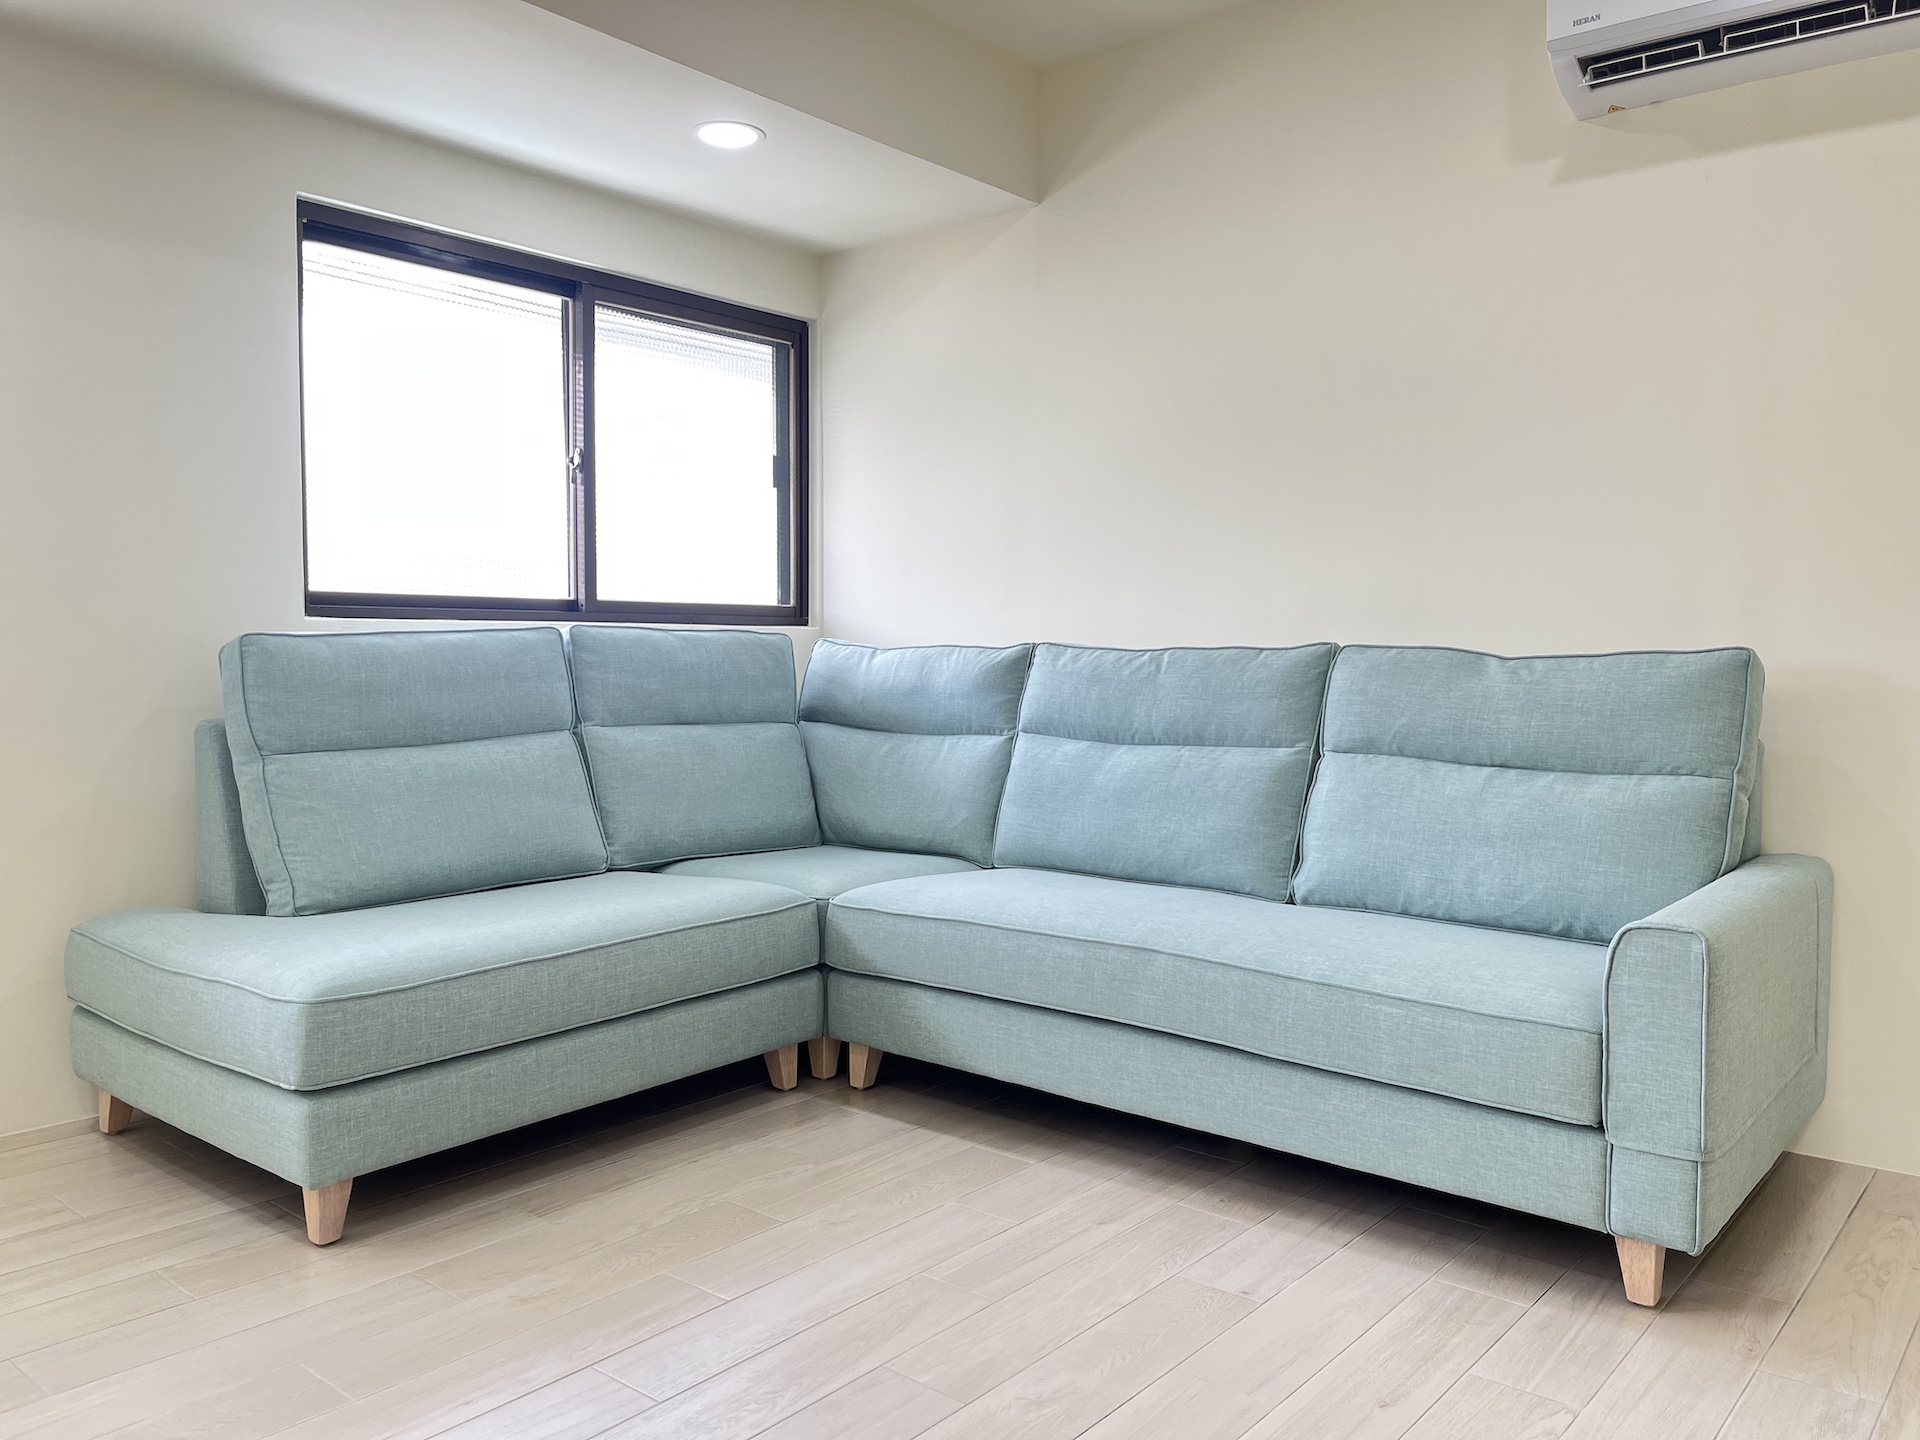 【客戶案例分享】台中大里Ｌ型涼感布沙發訂製